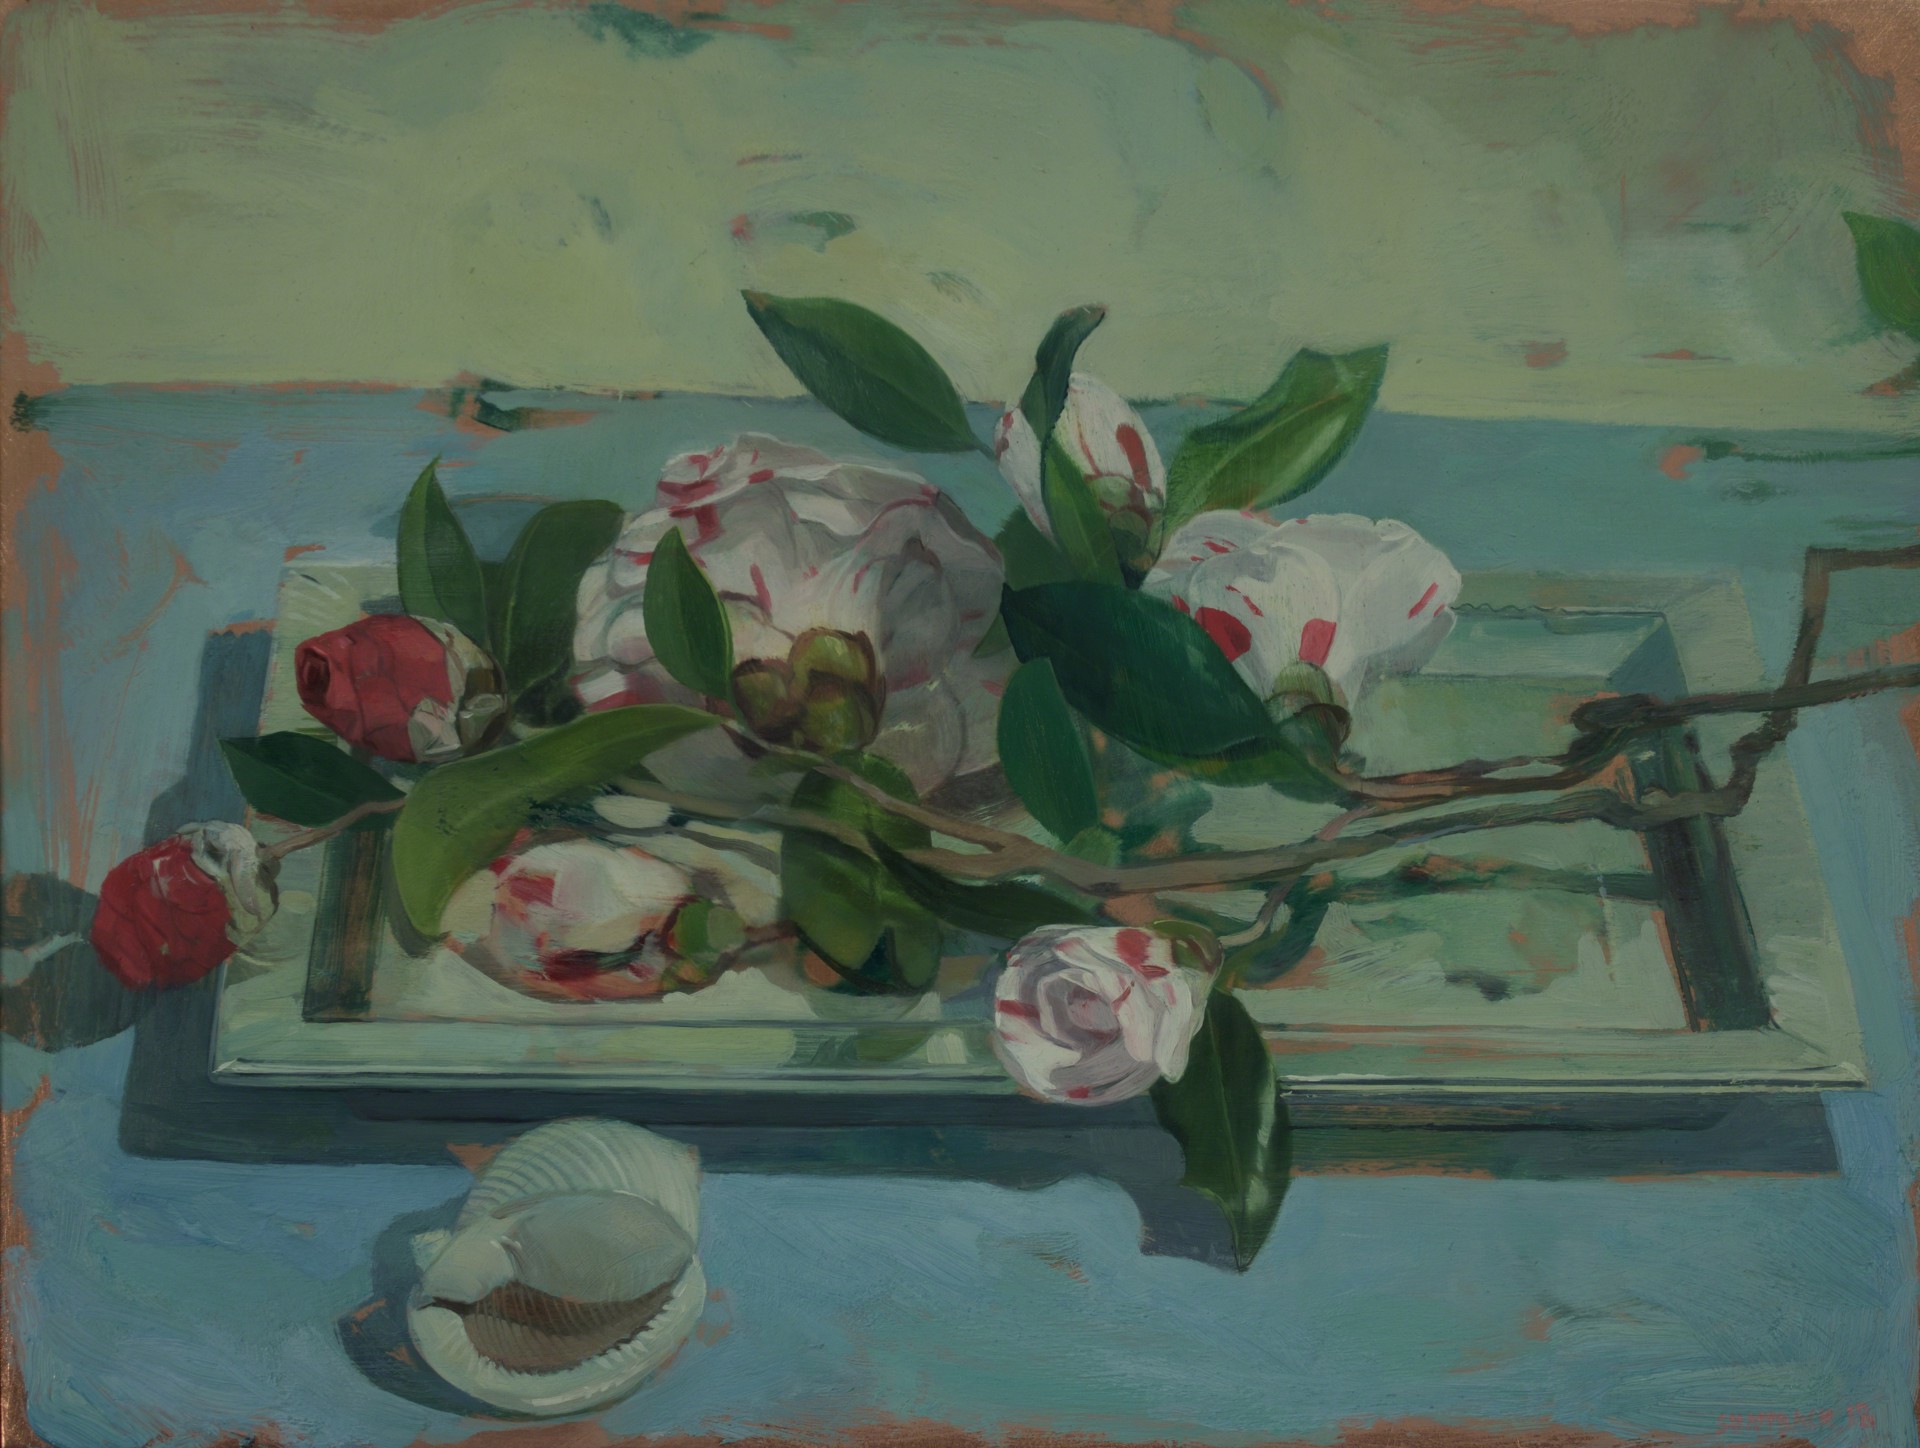 Camellias on Tray by Benjamin J. Shamback